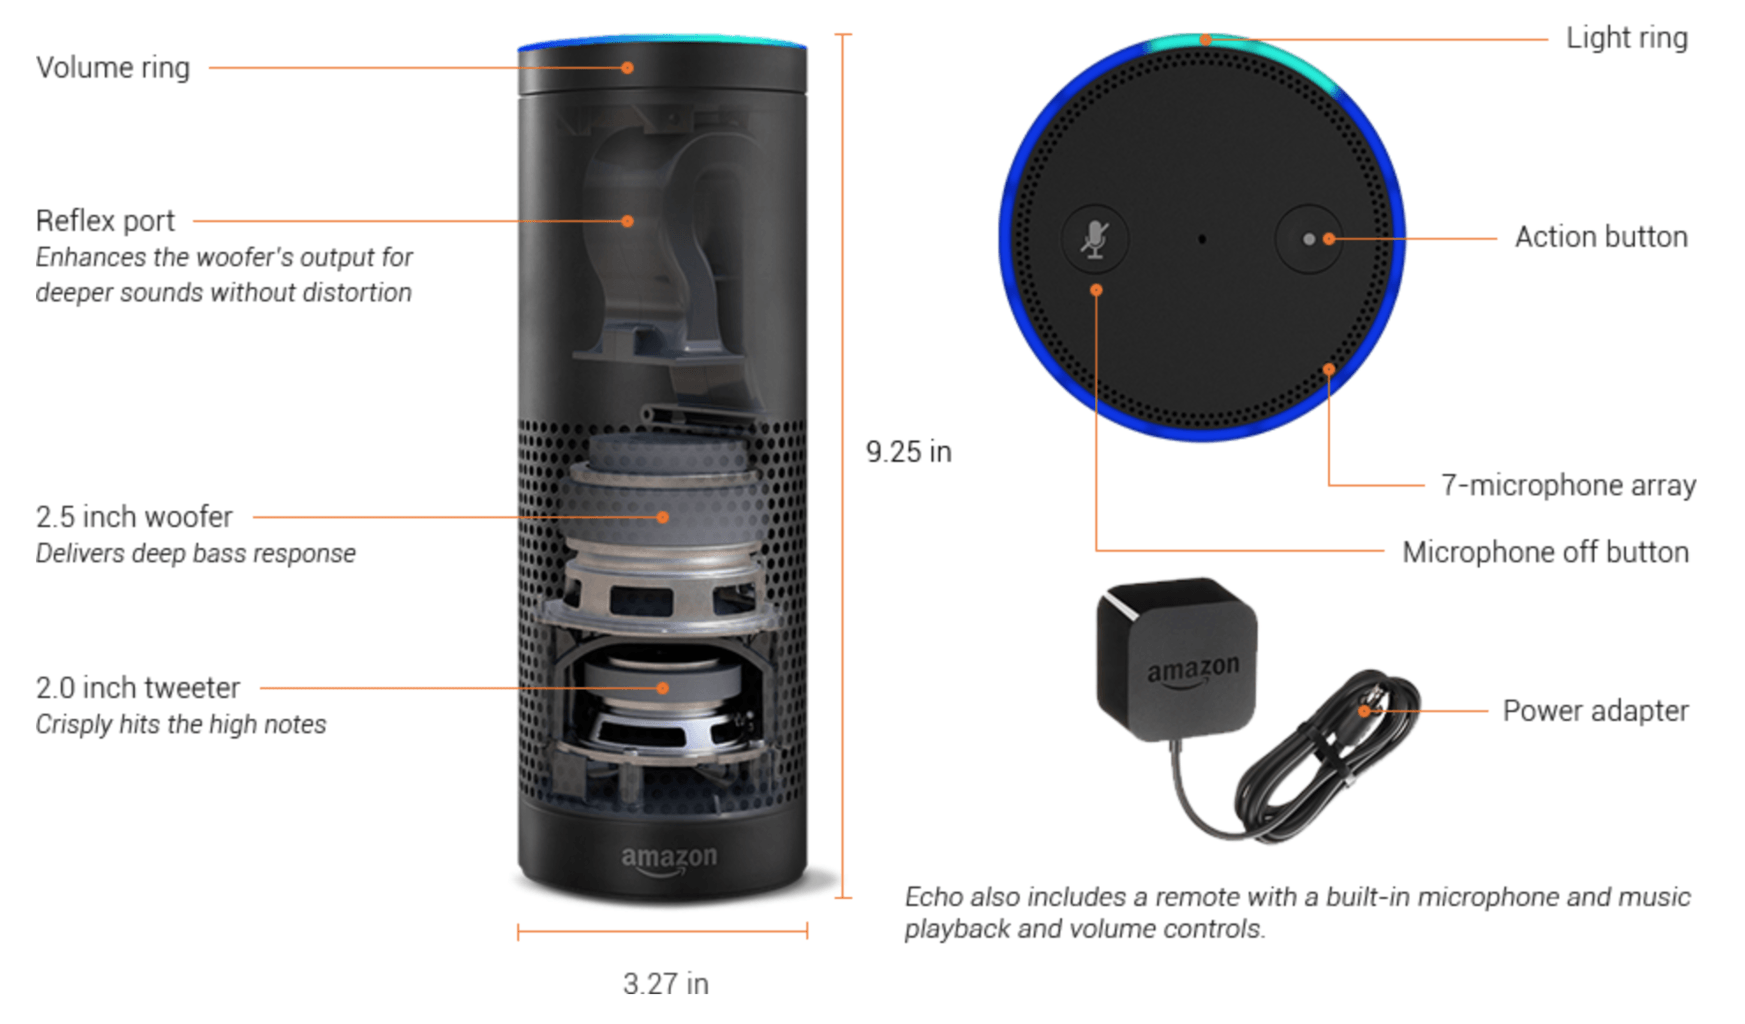 Amazon Echo Explained